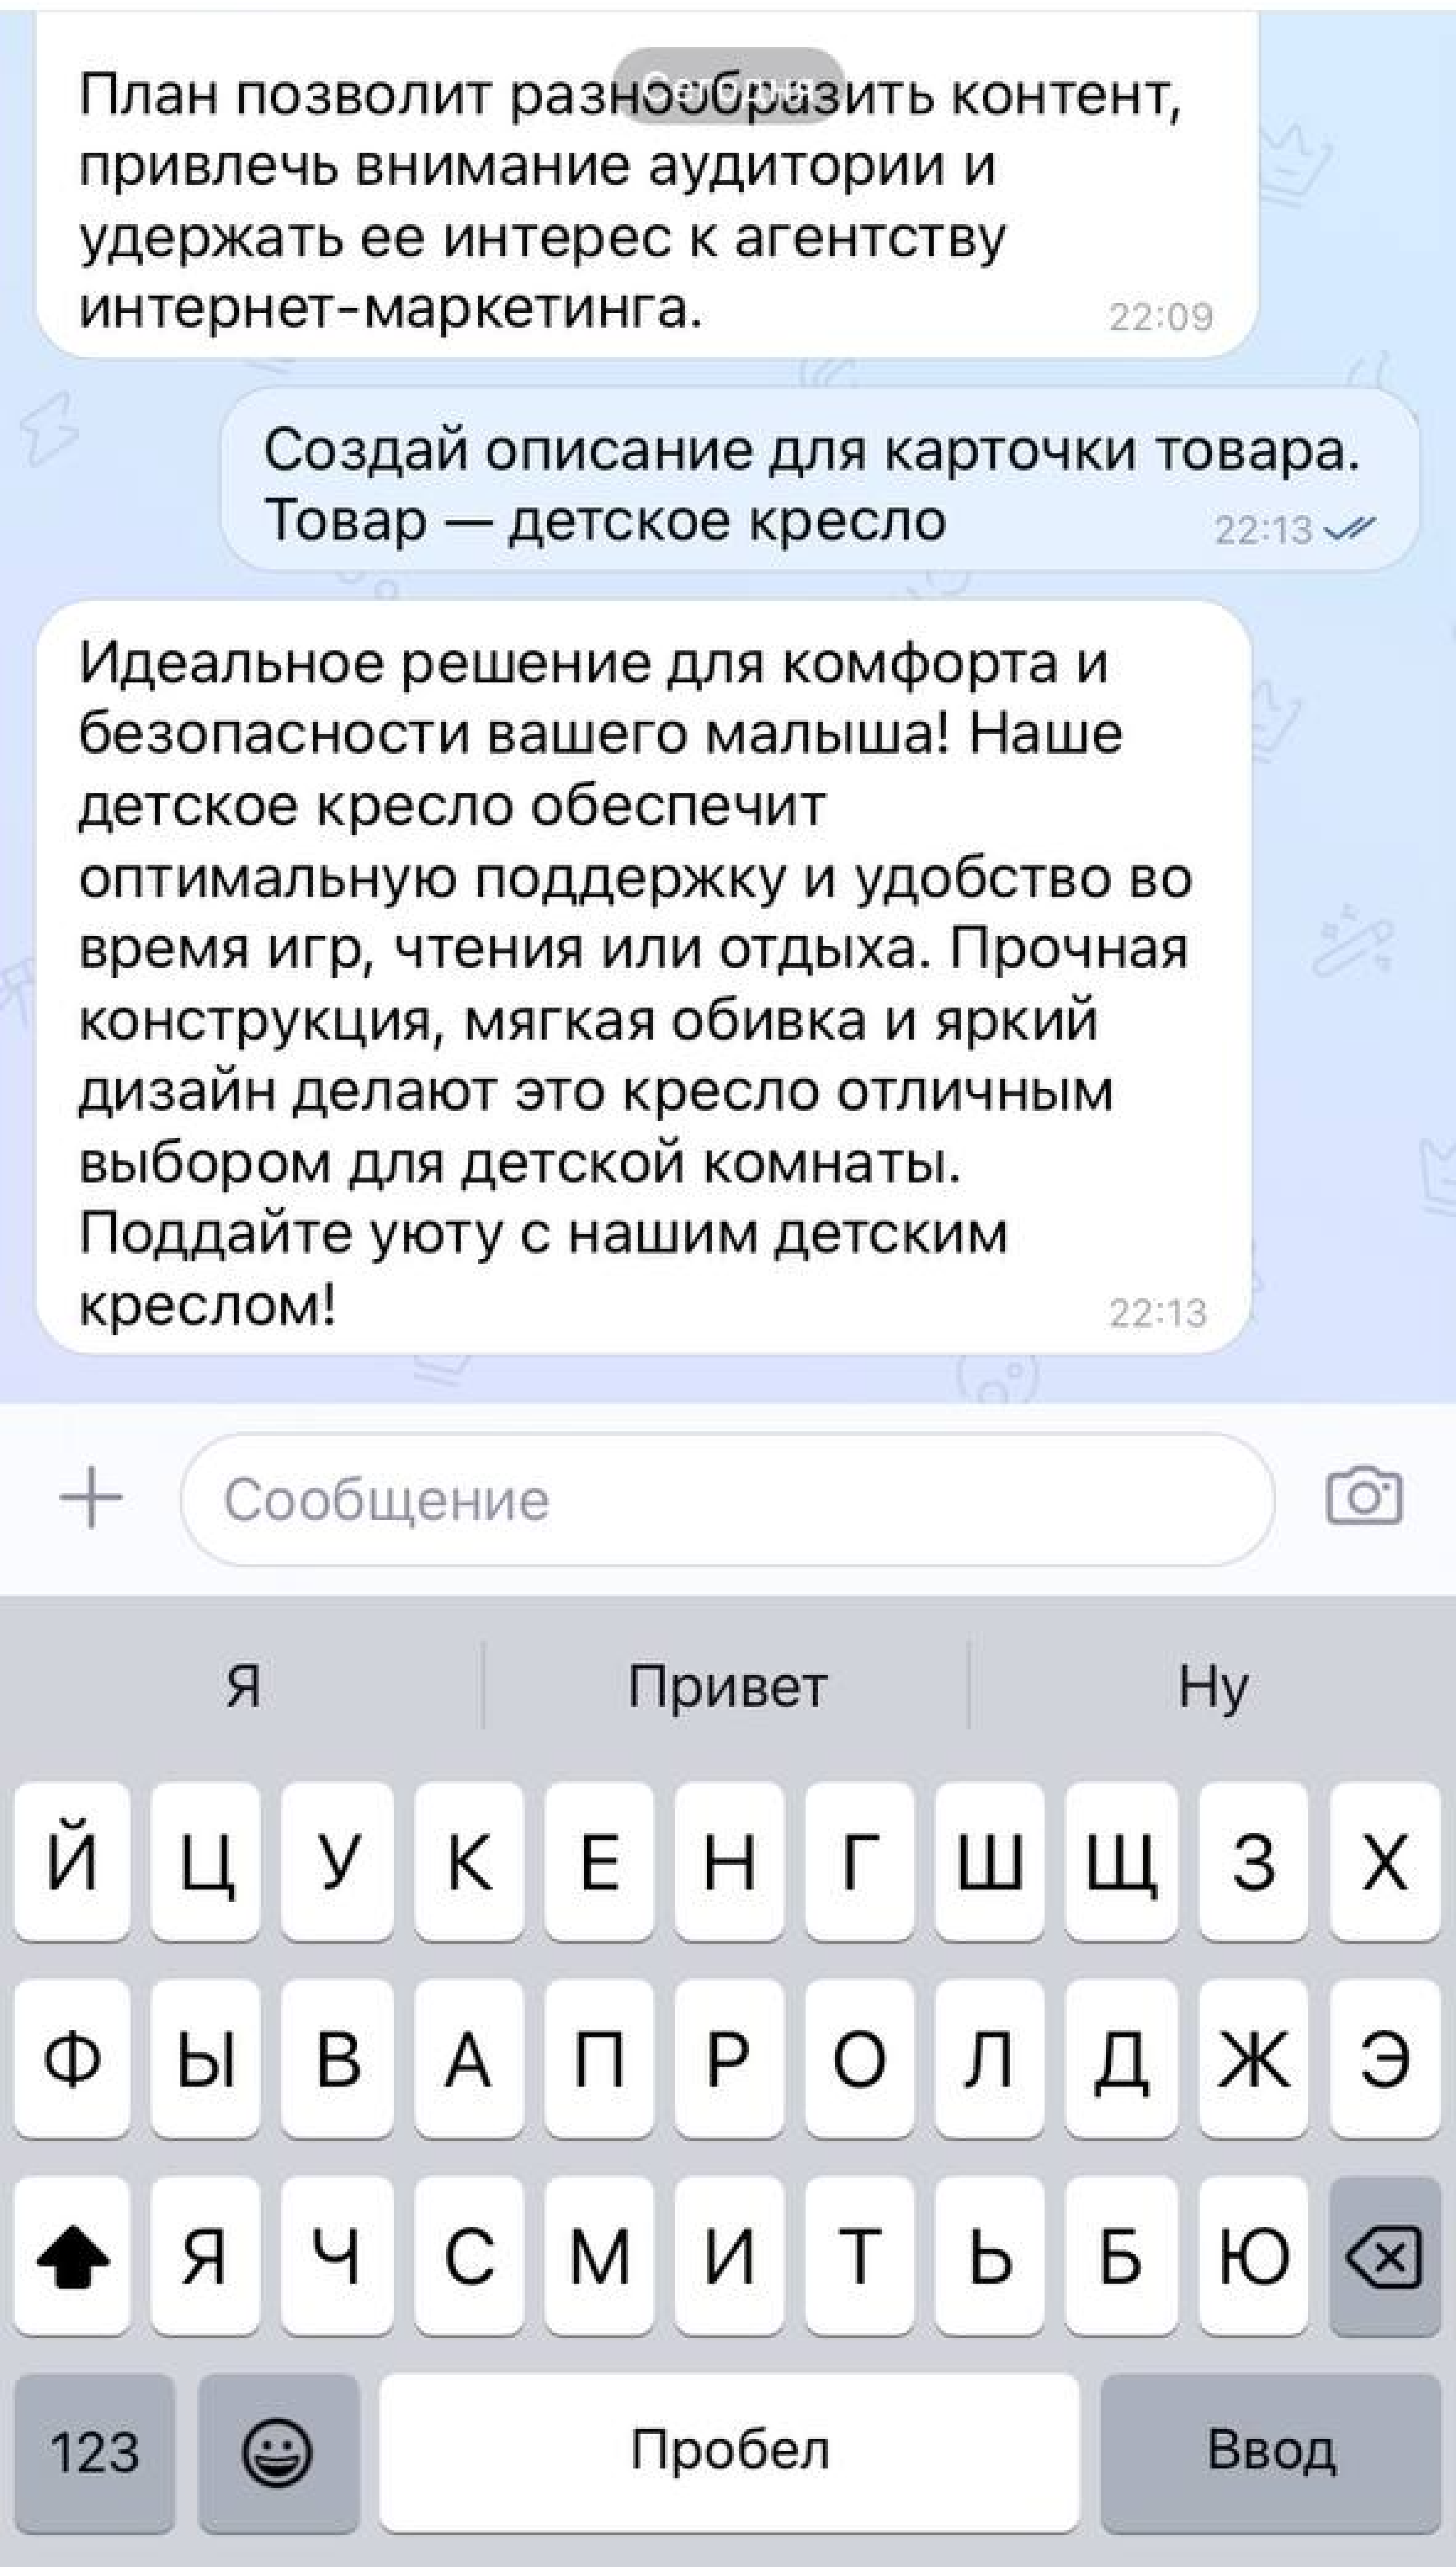 Источник: скриншот диалога с ChatGPT, https://tenchat.ru/chatgpt 